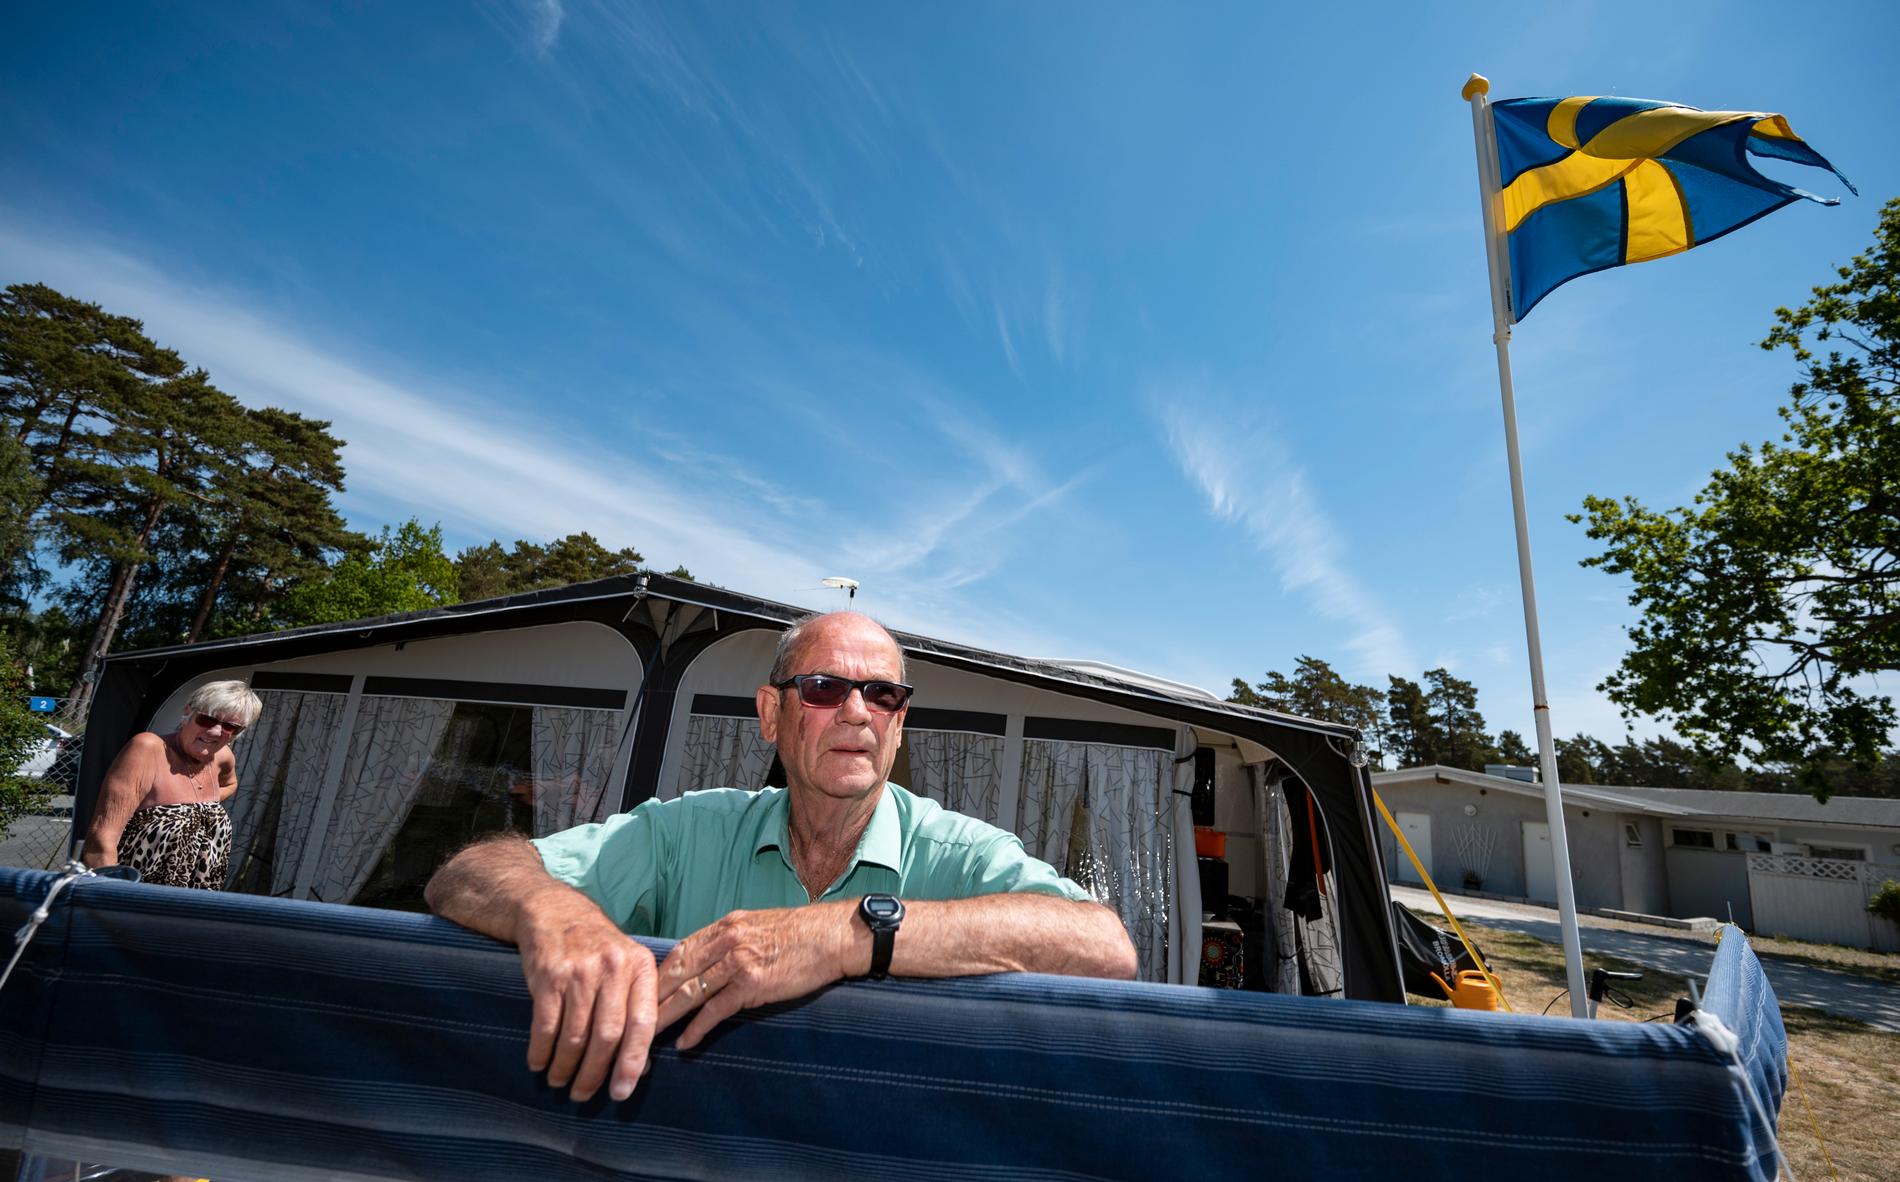 "Vi vill inte ha ner det här skitet här", säger Ingmar Mårtensson om coronasmittan. Både han och hustrun Gulle tillhör riskgrupperna.